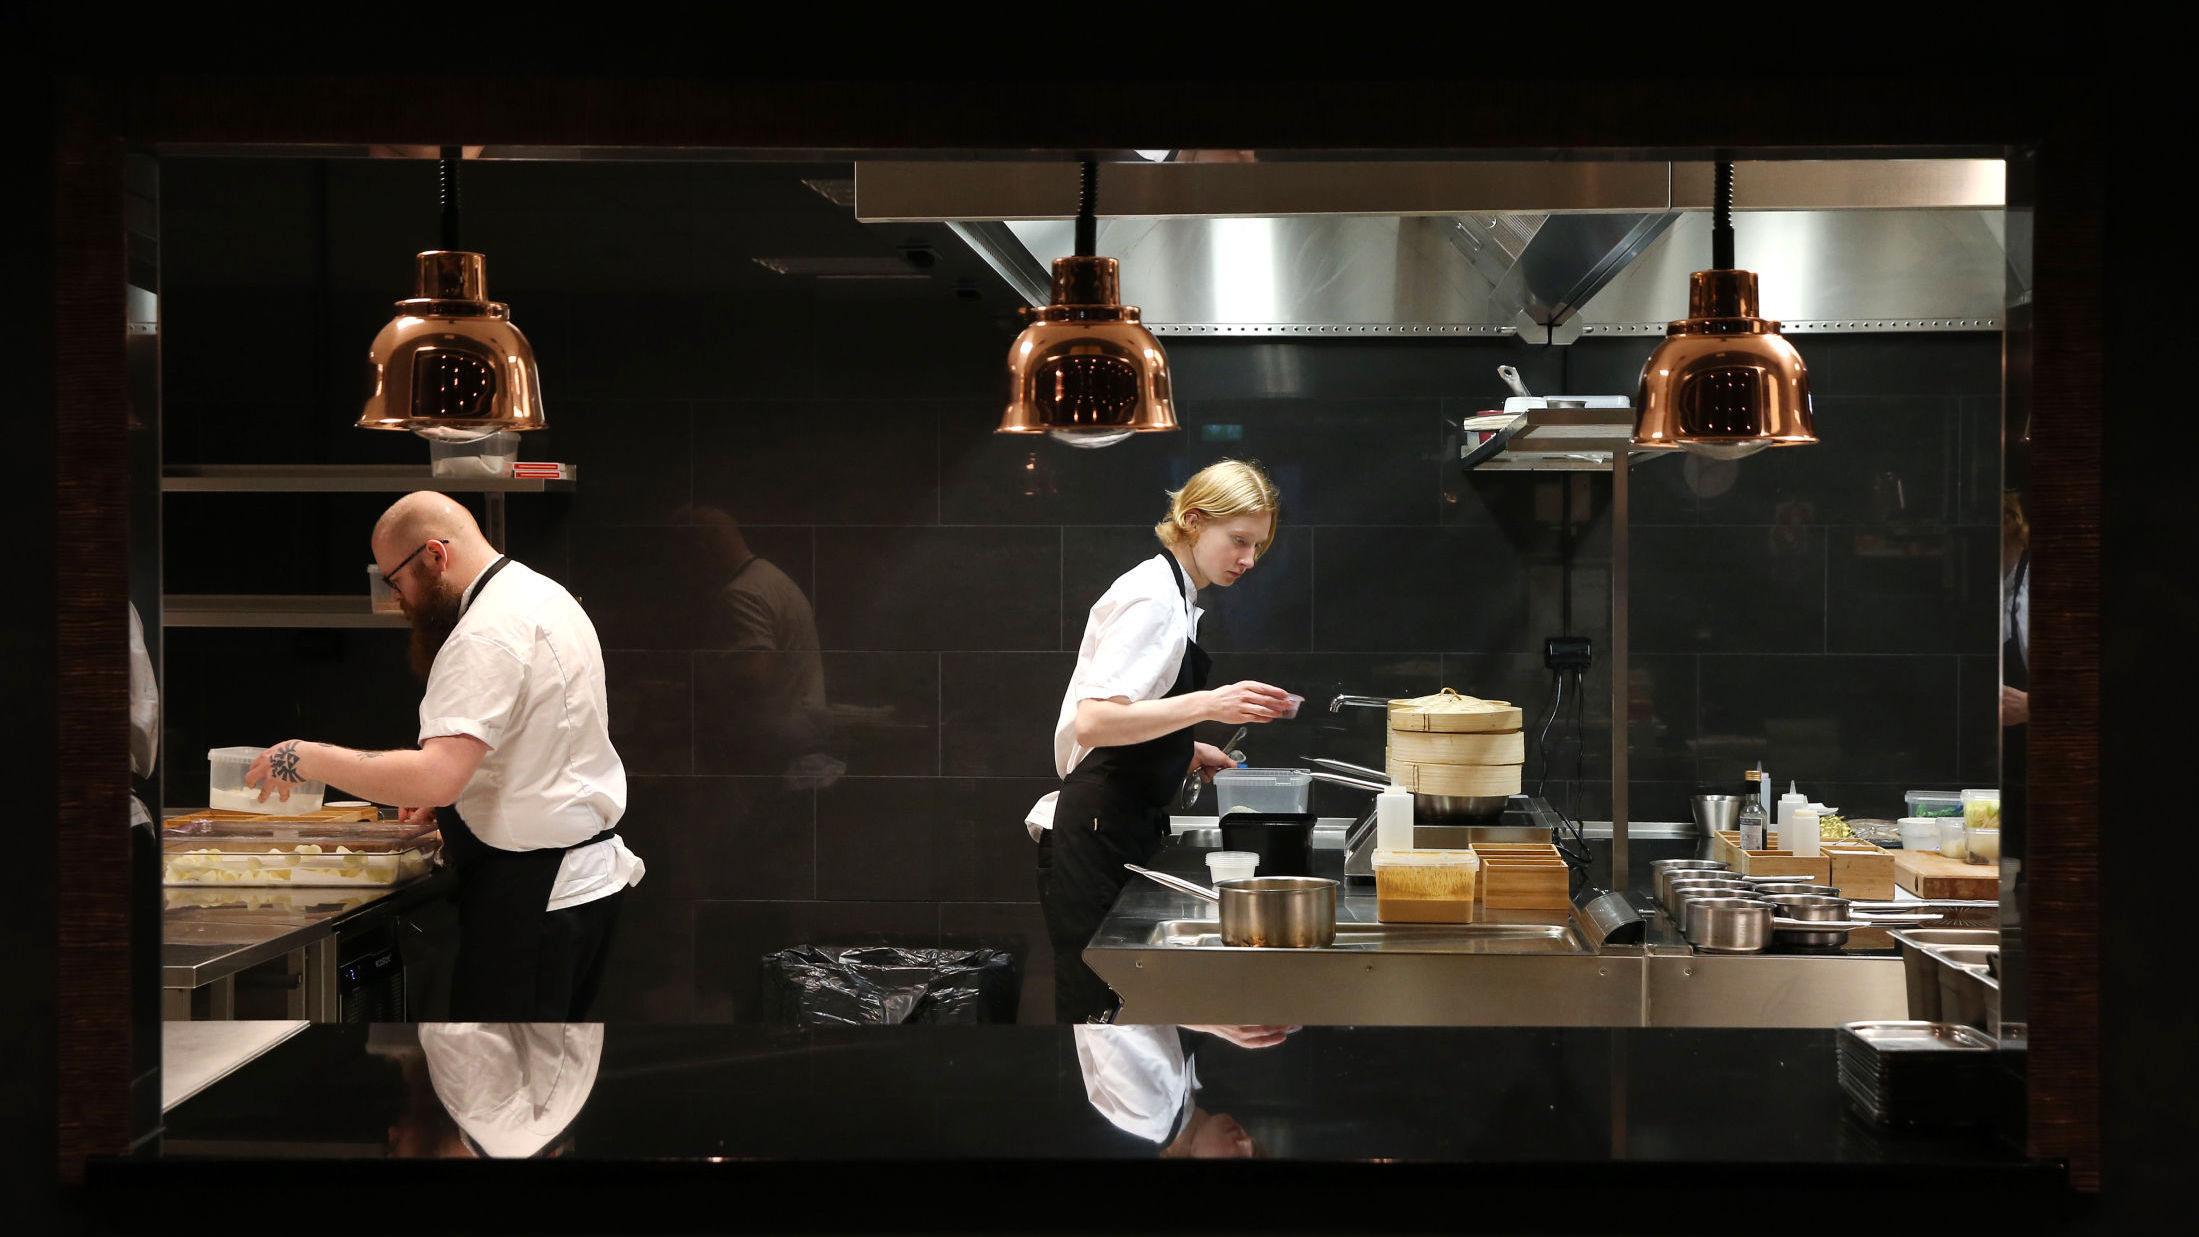 TERNINGKAST 5: Rest serverer ingrediensene andre restauranter ikke vil servere. Og det gjør de bra, mener VGs restaurantanmelder. Foto: Trond Solberg/VG